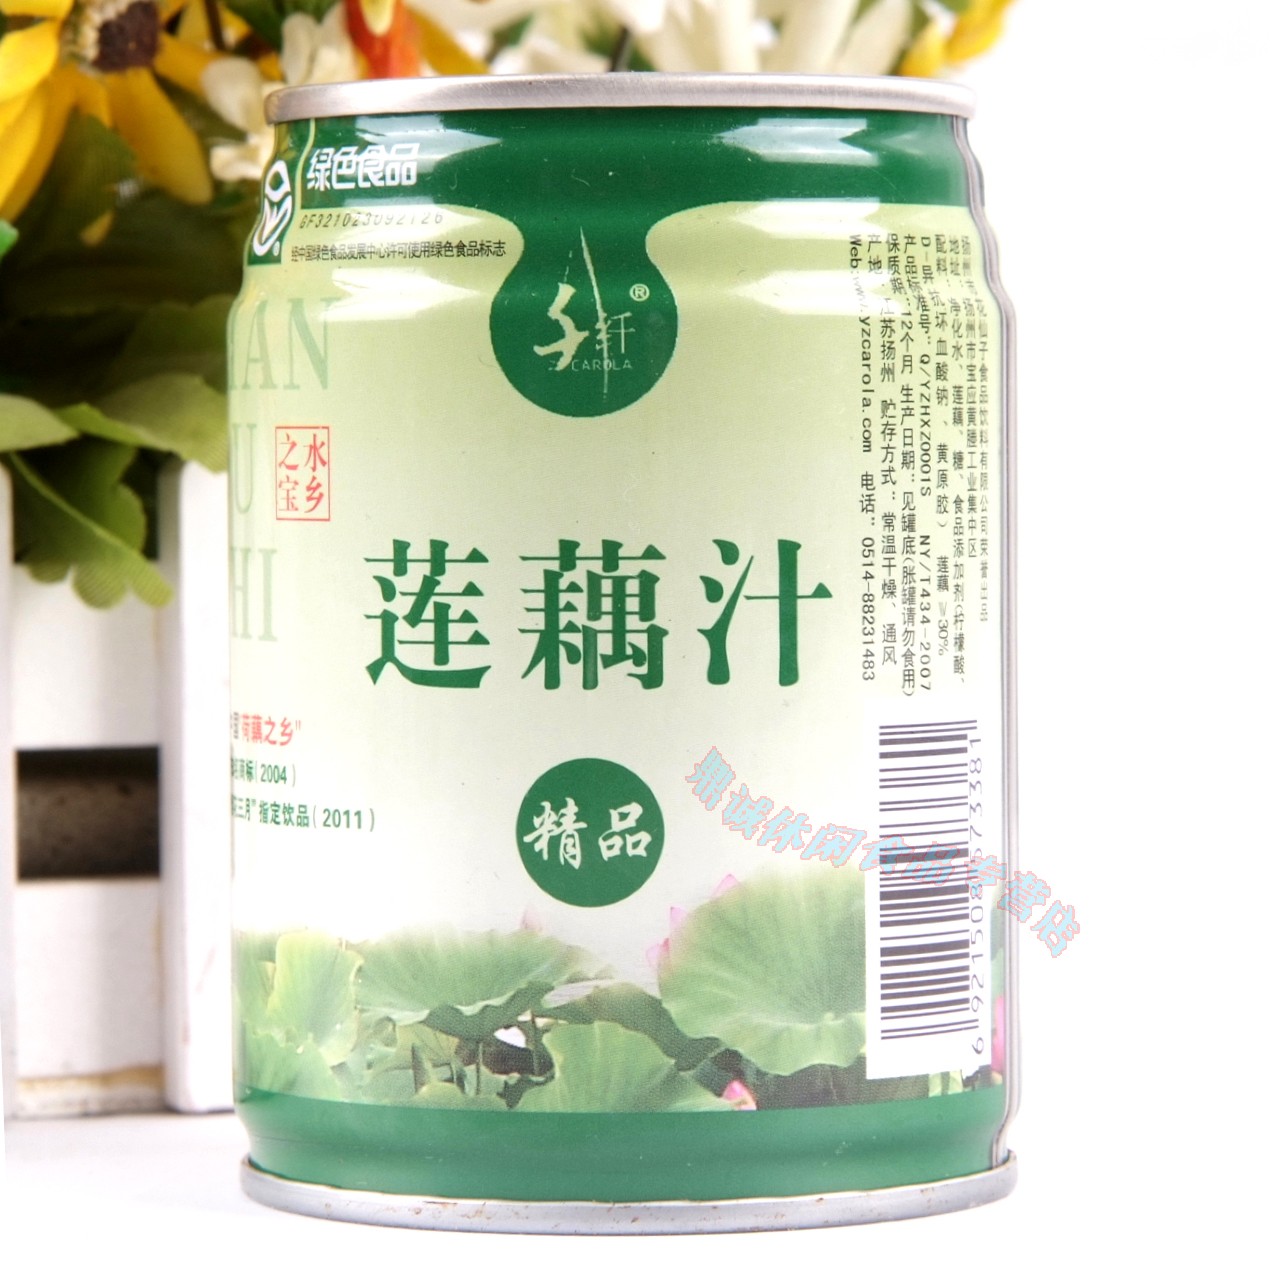 扬州特产 宝应莲藕汁千纤 绿色蔬果汁饮料蔬菜汁24罐 - 图1